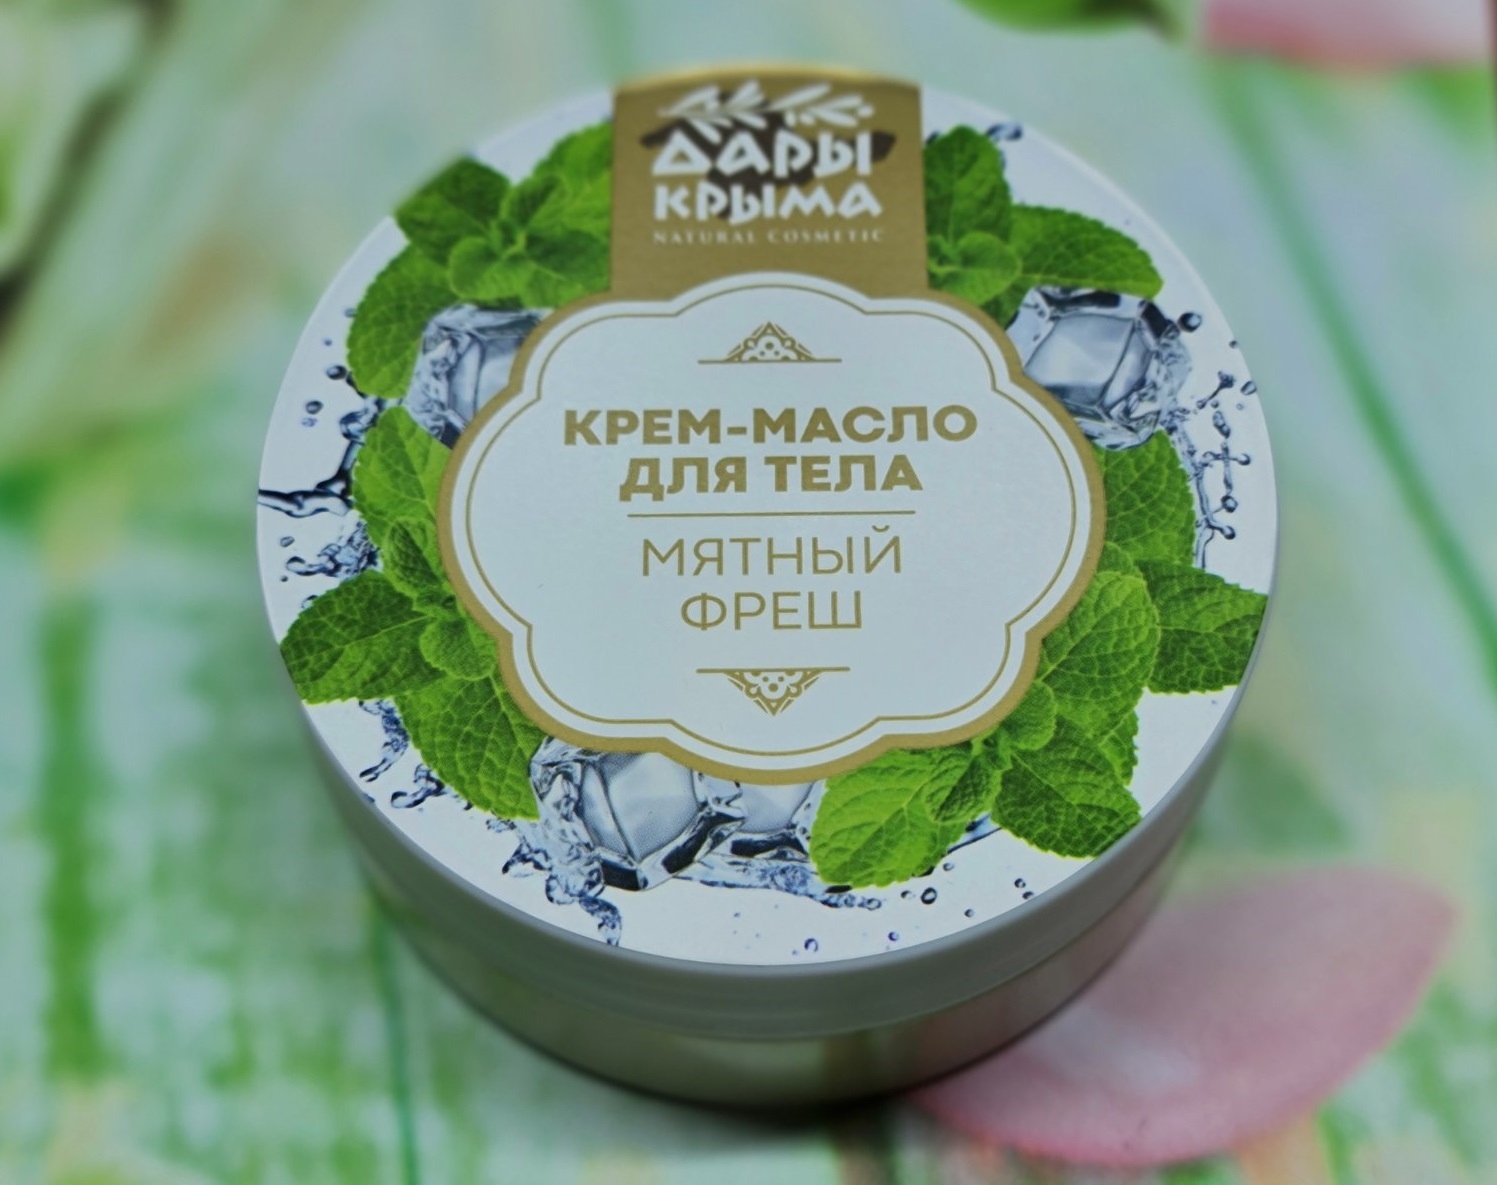 ДК Крем-масло для тела Мятный фреш 150 гр.